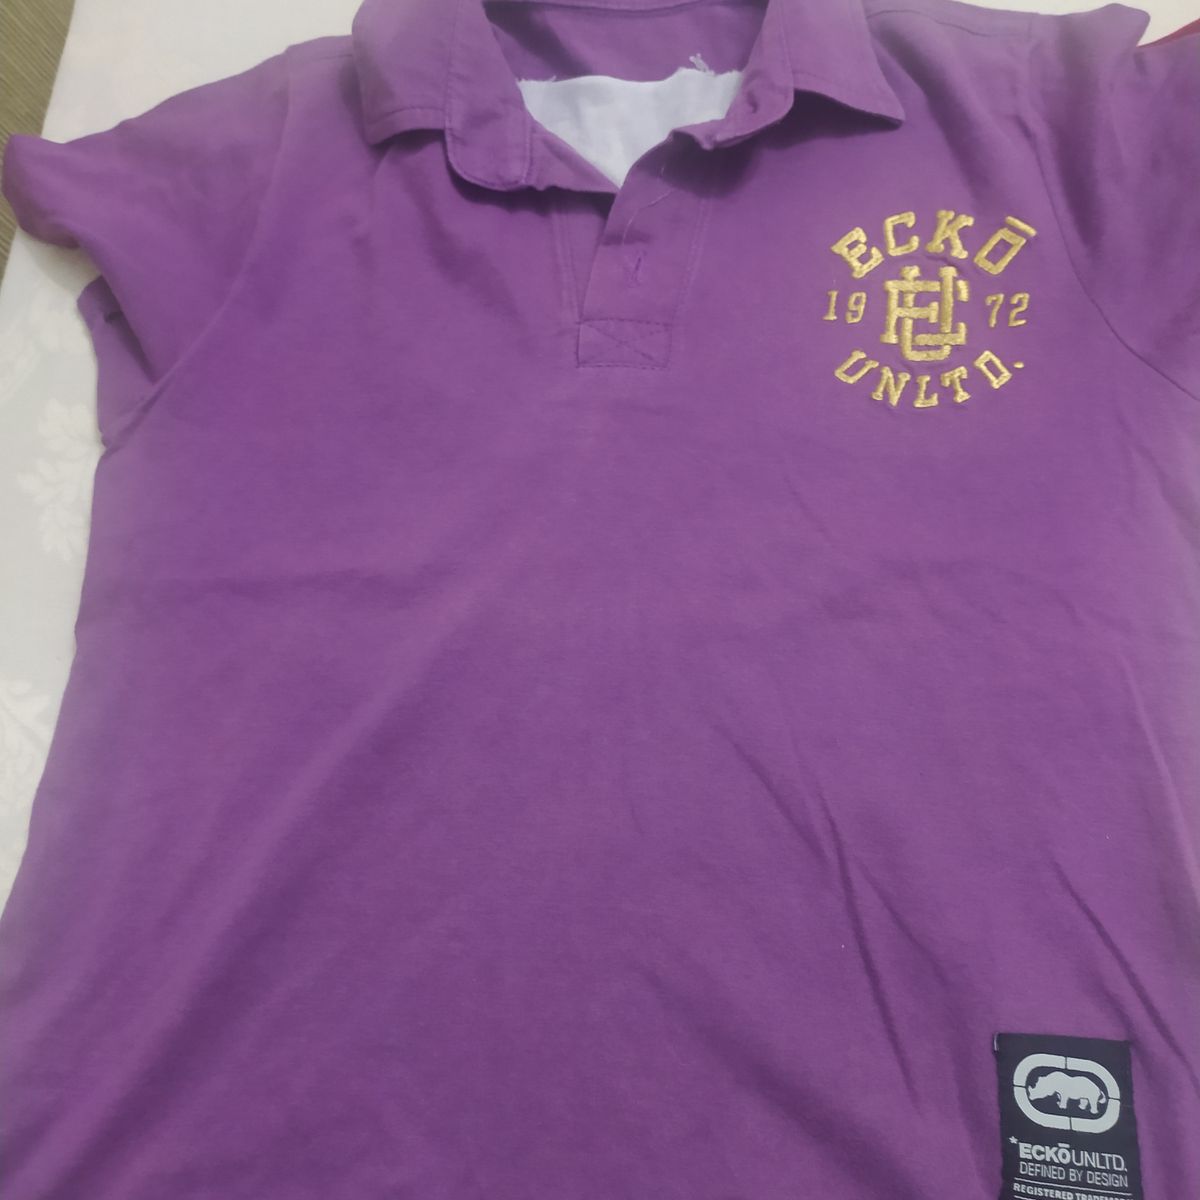 Camisa e Camiseta Marrom e Água Marinha Xadrez Tip Top, Roupa Infantil  para Menino Tip Top Usado 80467411